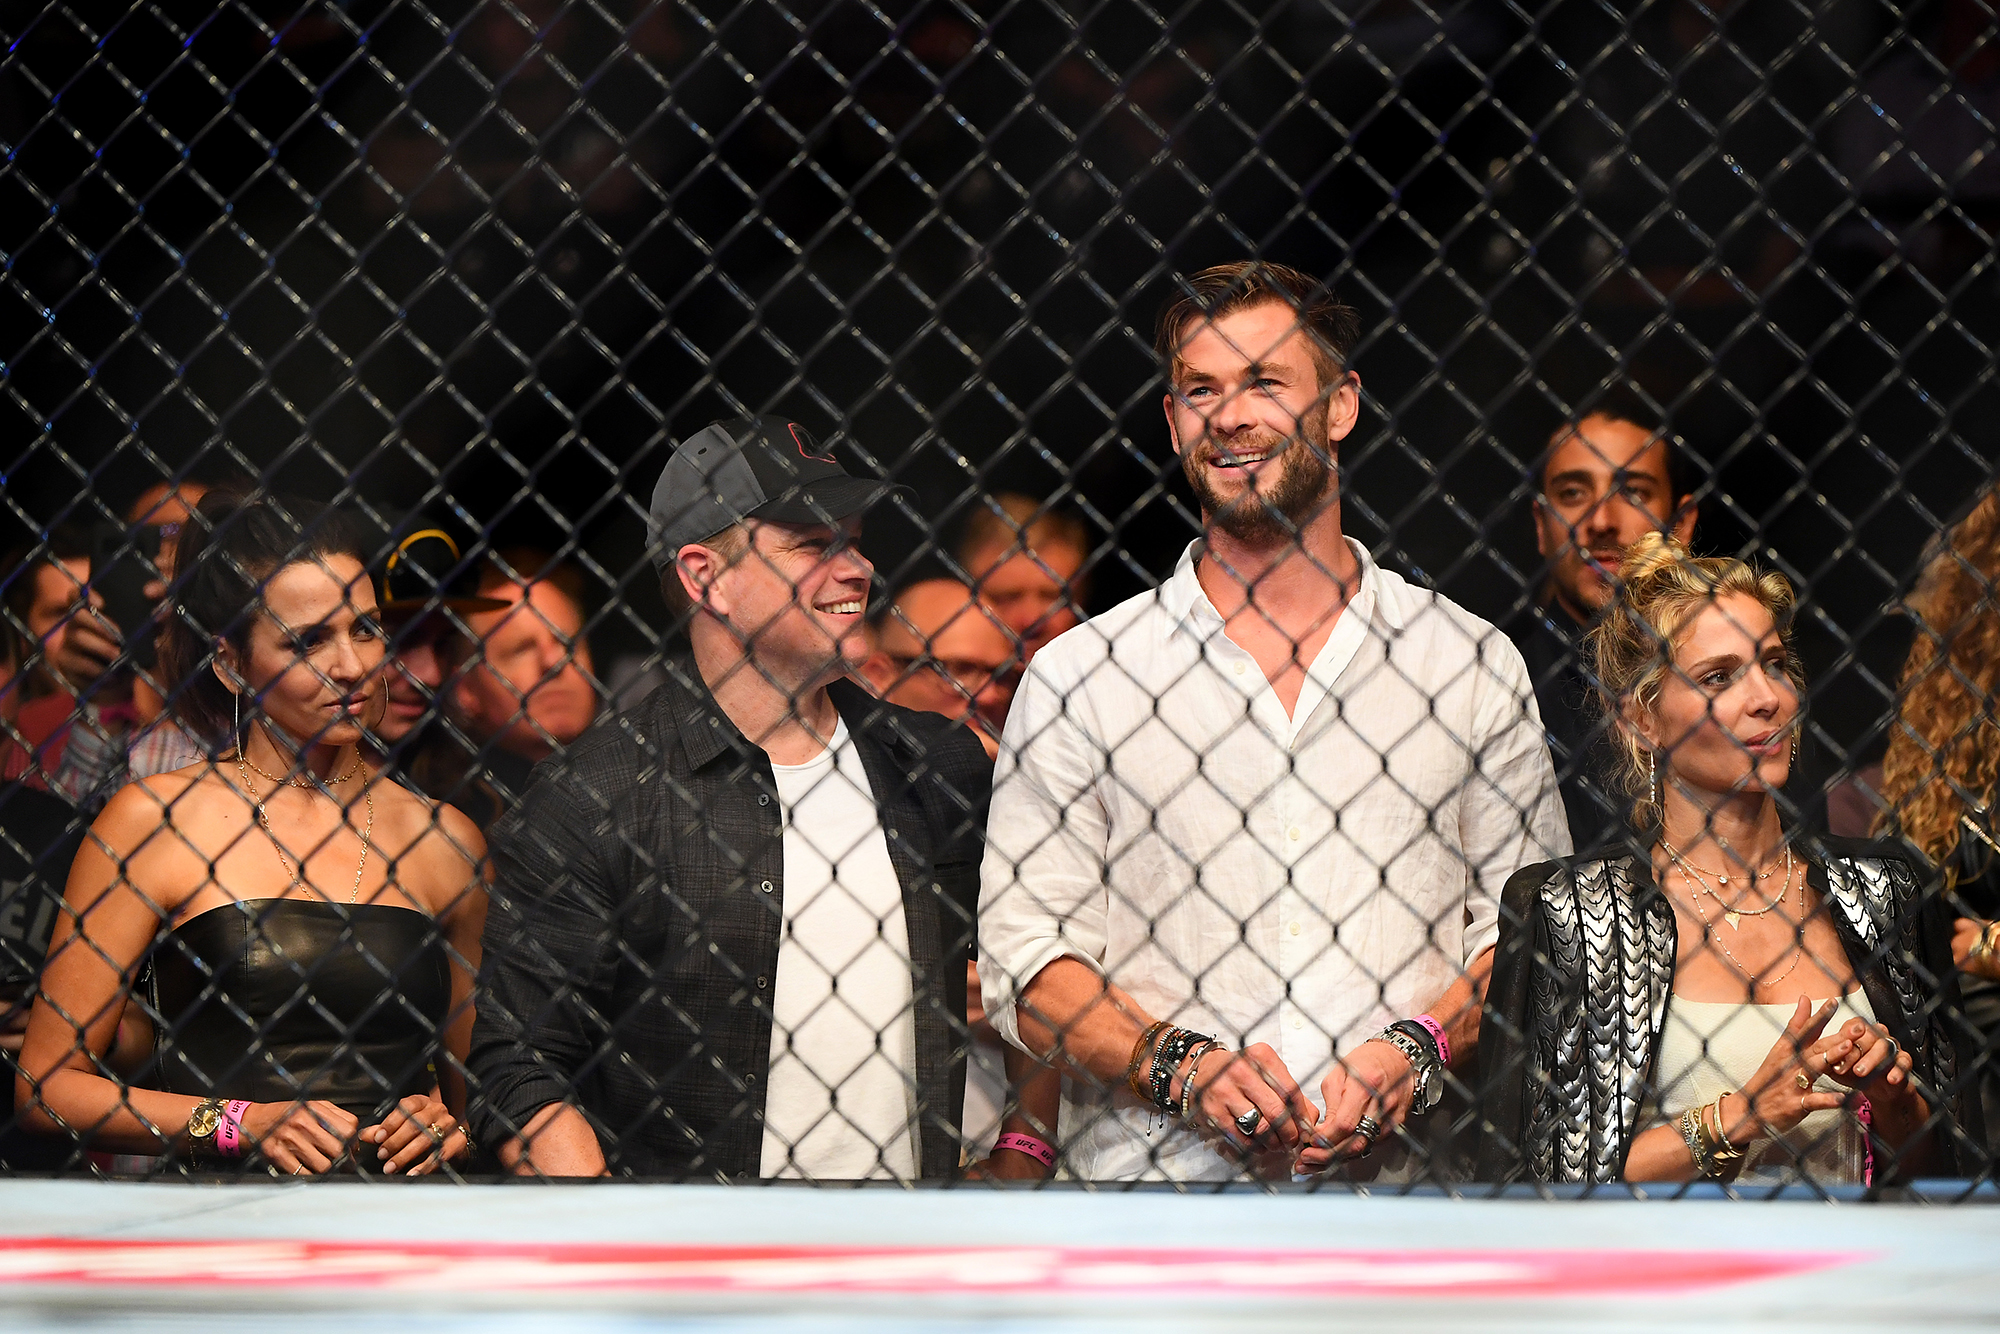 Голливудские актеры Мэтт Дэймон и Крис Хемсворт наблюдают за боями в рамках UFC 234 в Мельбурне, Австралия. Источник: Quinn Rooney / Gettyimages